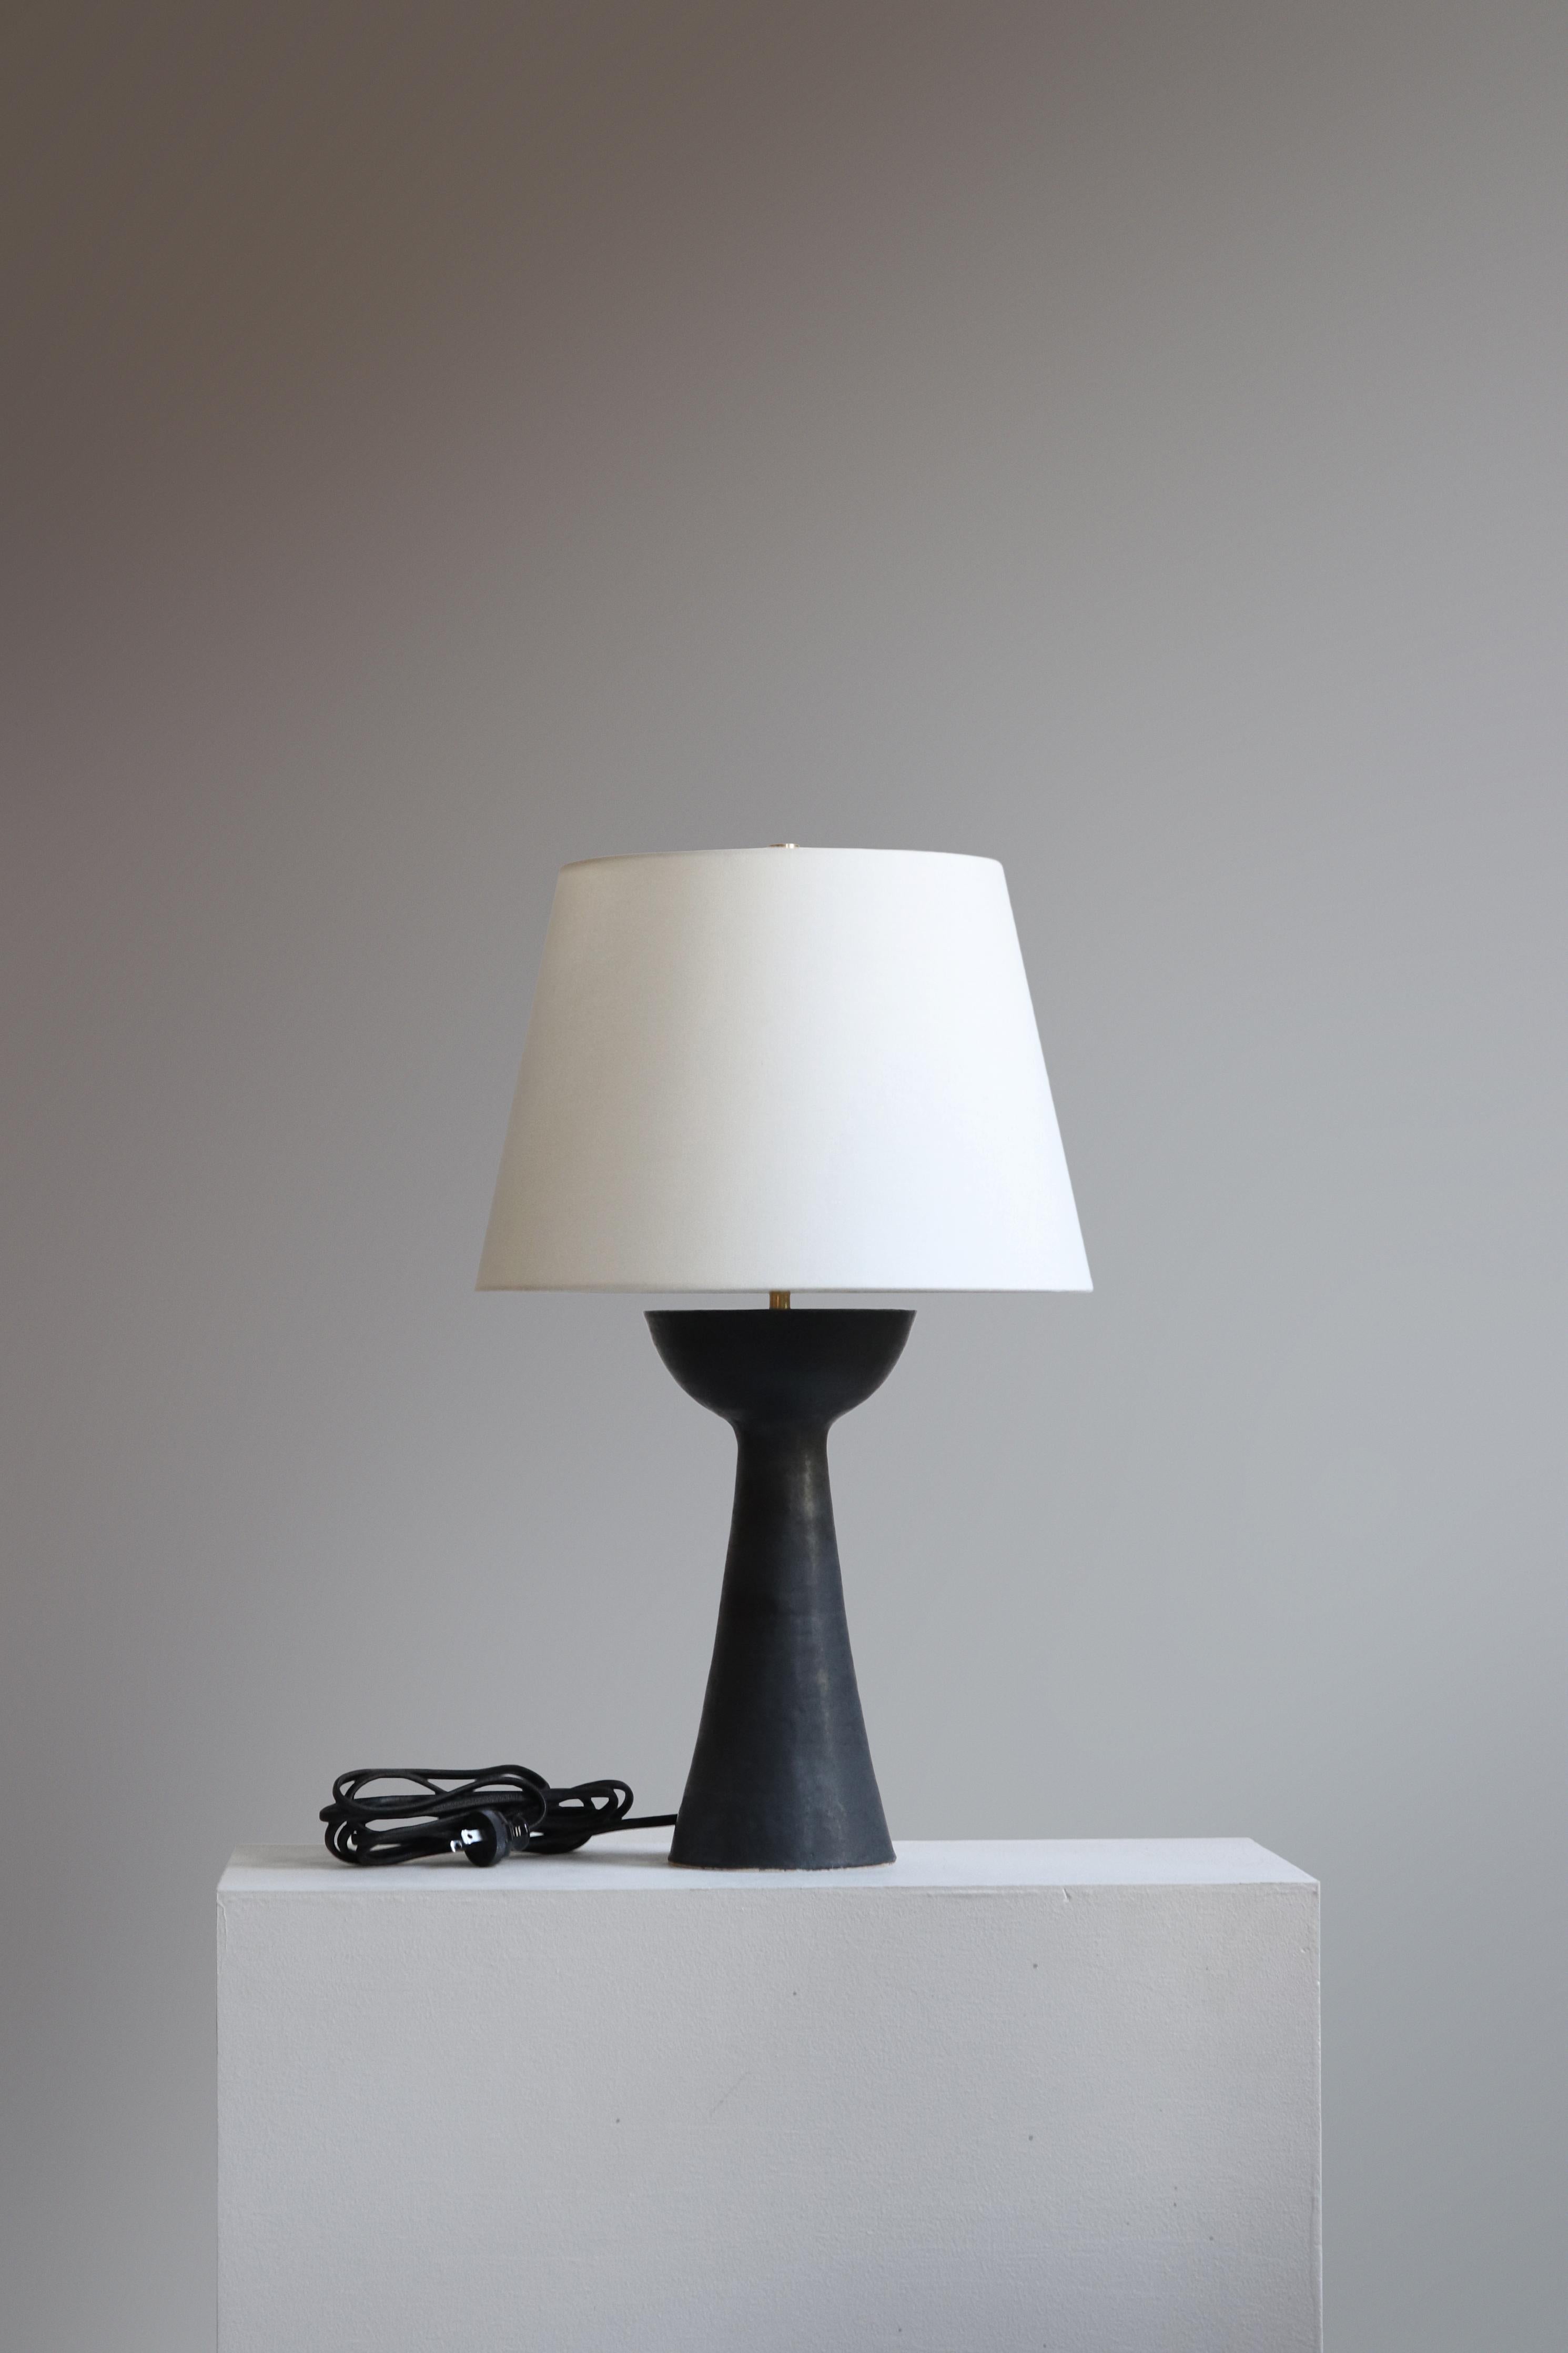 Lampe de table Seneca 21 anthracite par Danny Kaplan Studio
Dimensions : ⌀ 36 x H 54 cm
MATERIAL : Céramique émaillée, laiton brut, lin

Cet article est fabriqué à la main et peut présenter des variations au sein d'une même pièce. Nous faisons de